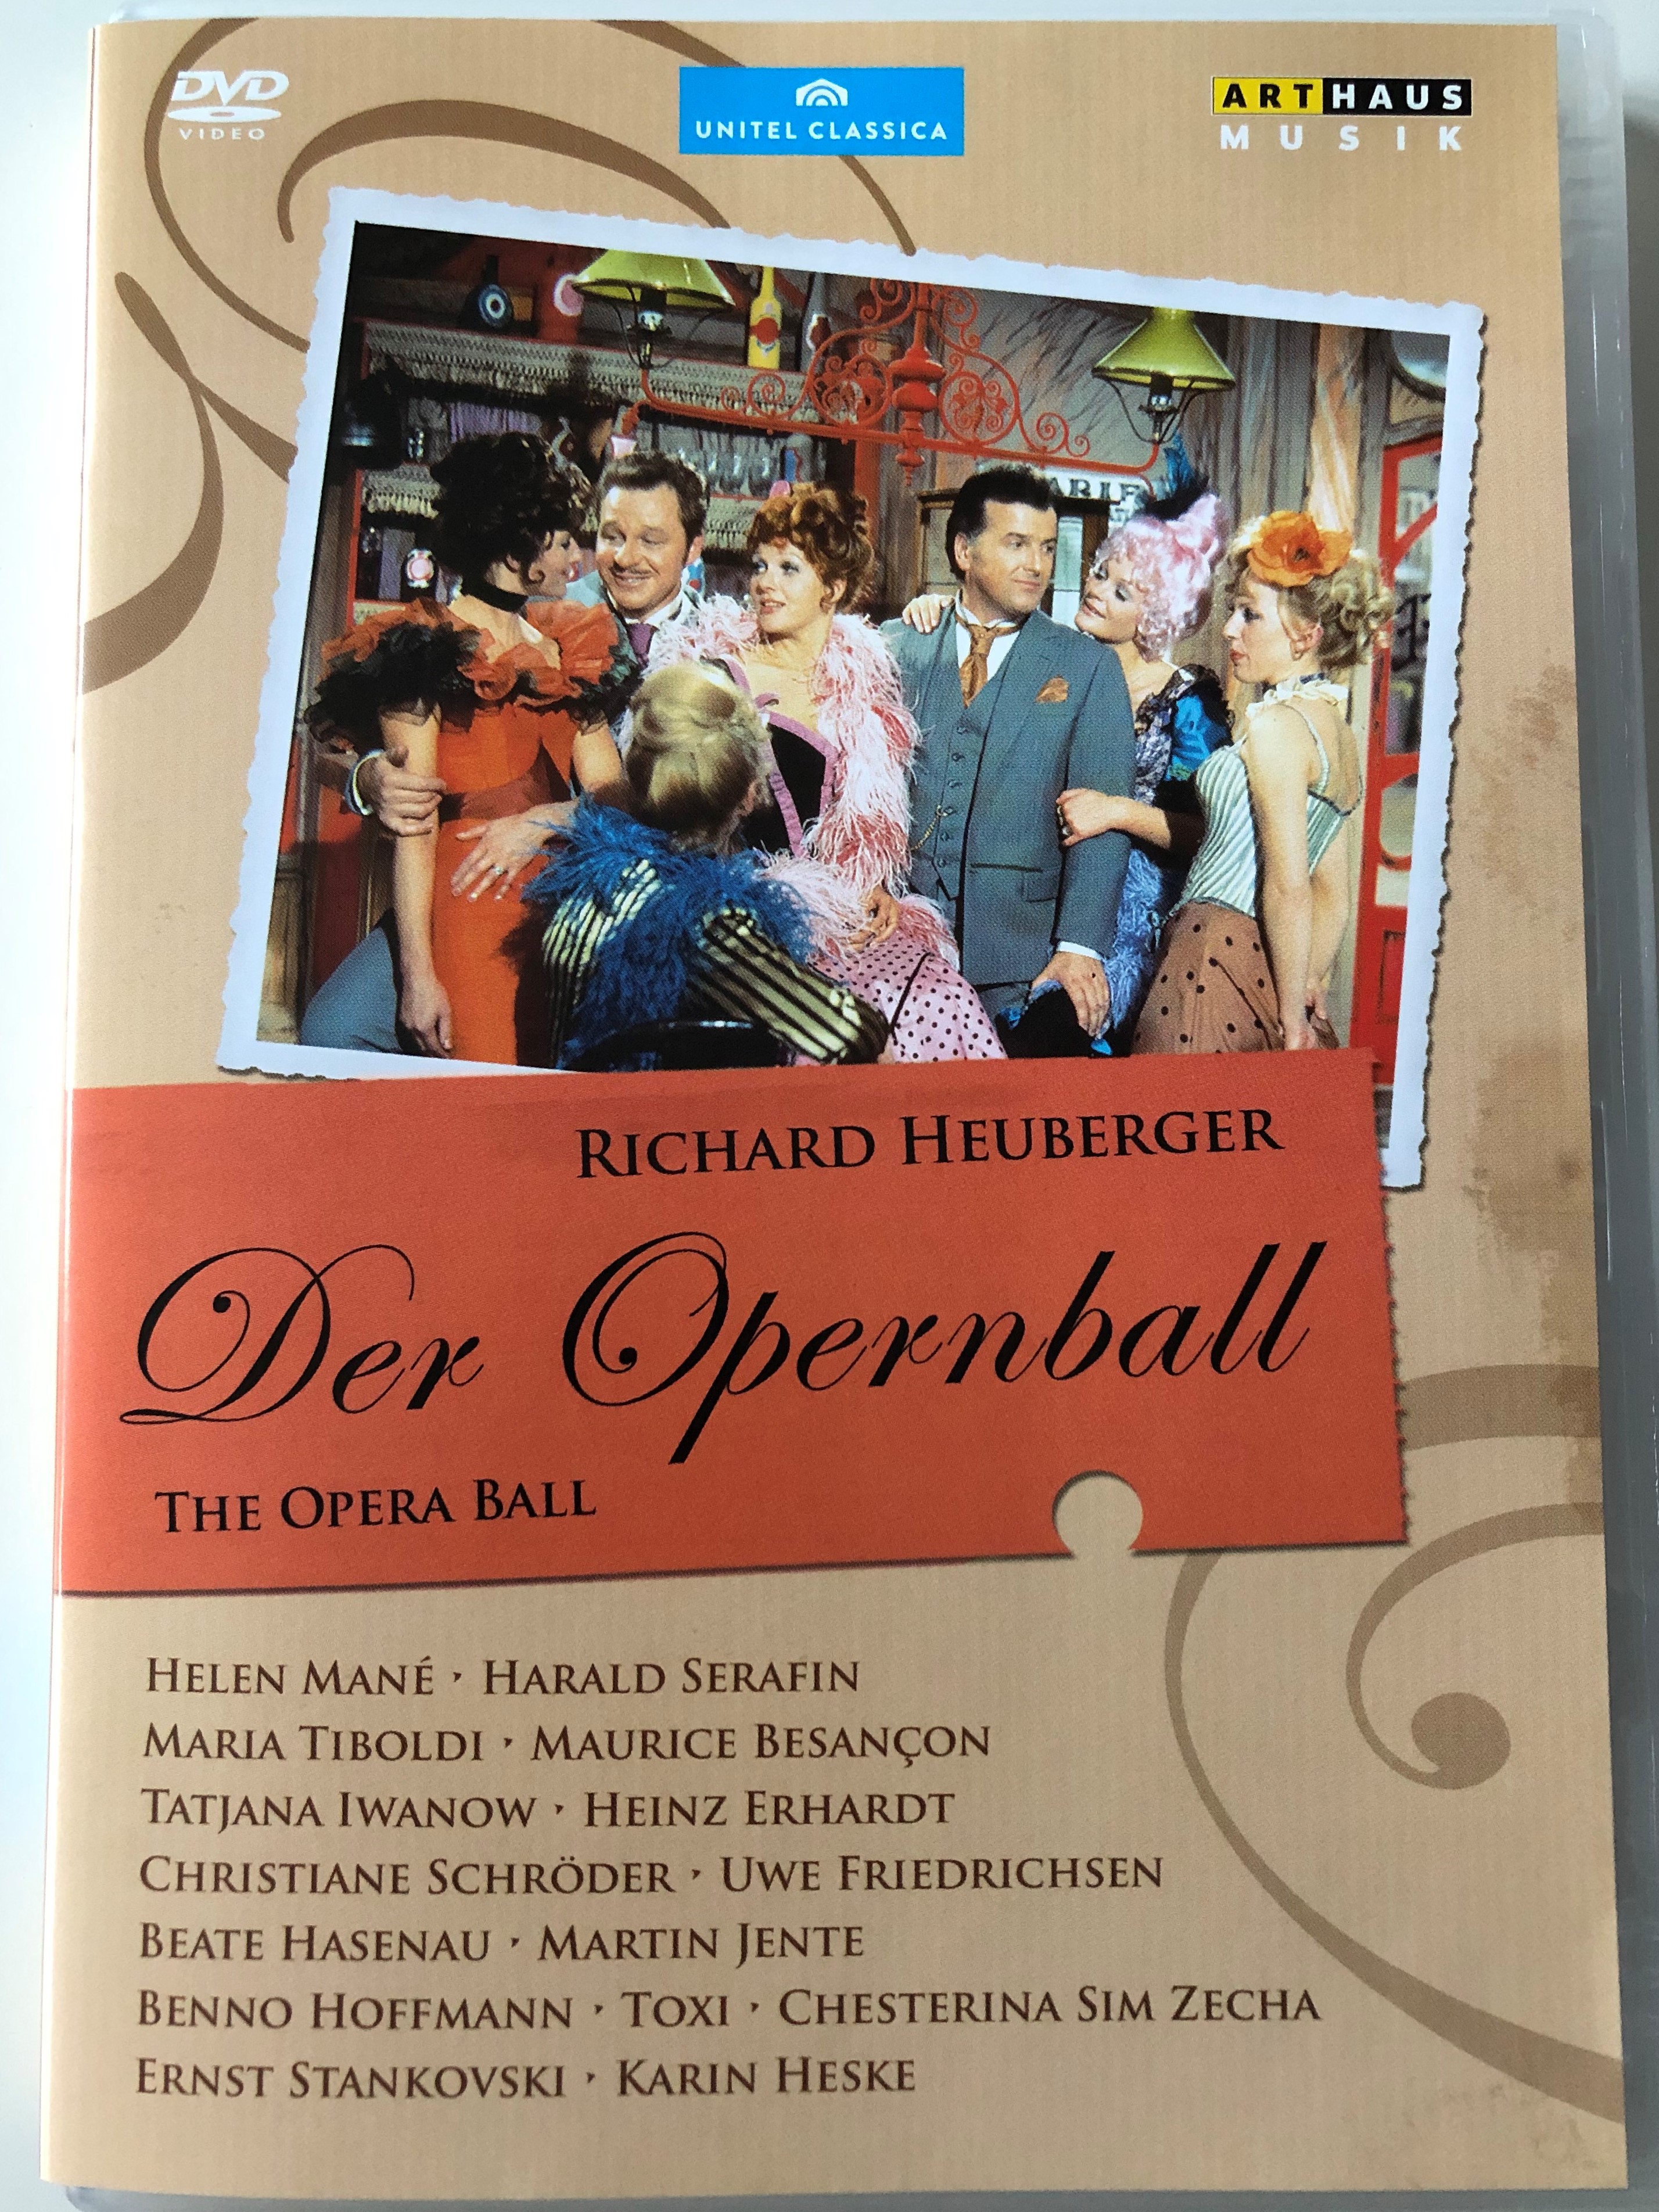 the-opera-ball-dvd-1970-richard-heuberger-der-opernball-1.jpg